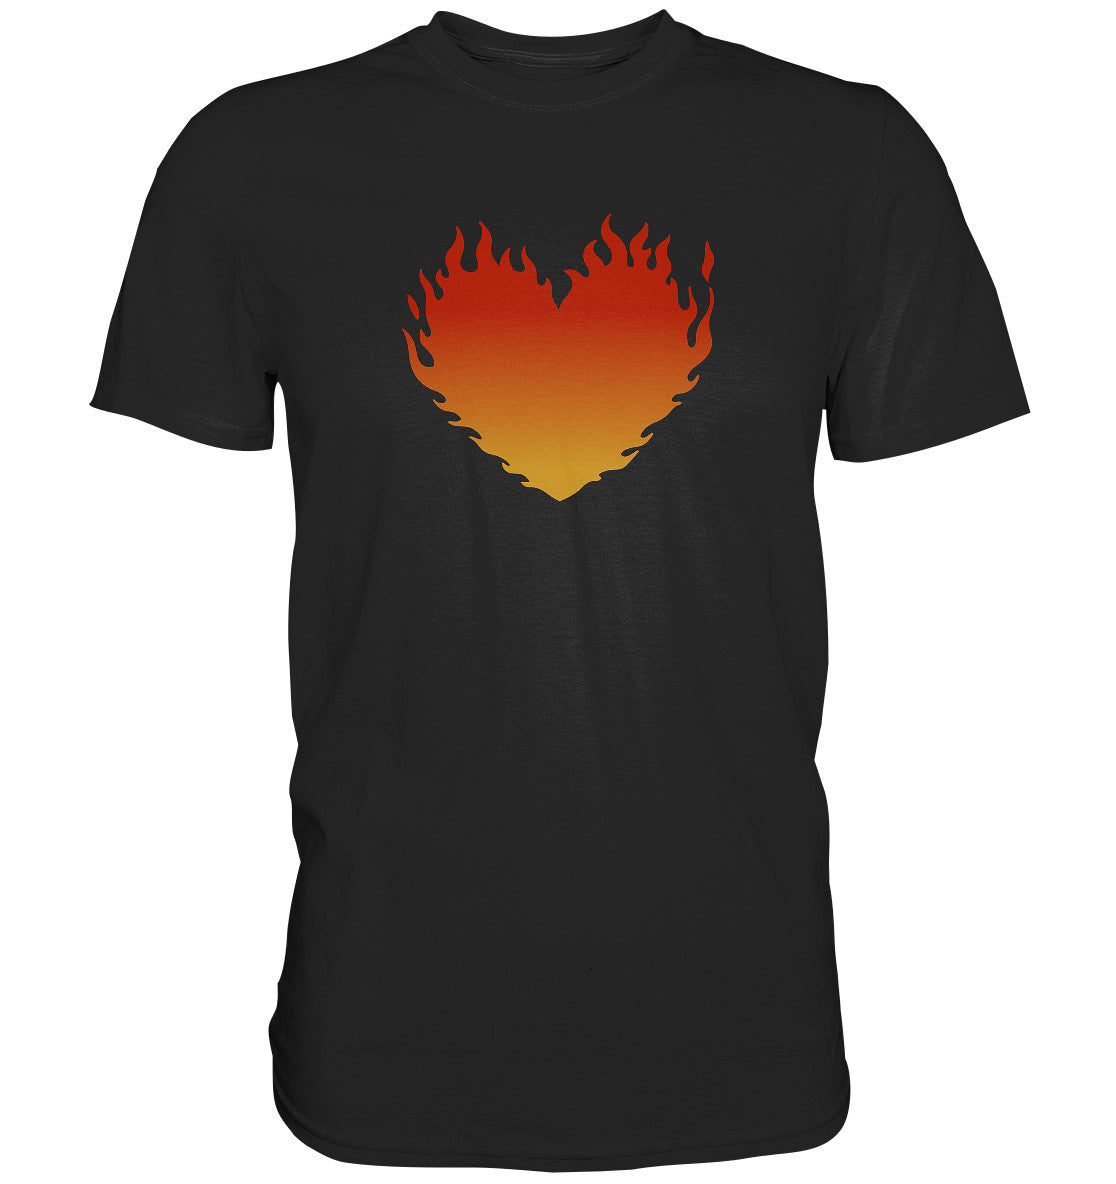 Lk 24,32 - Brennendes Herz - Premium Shirt